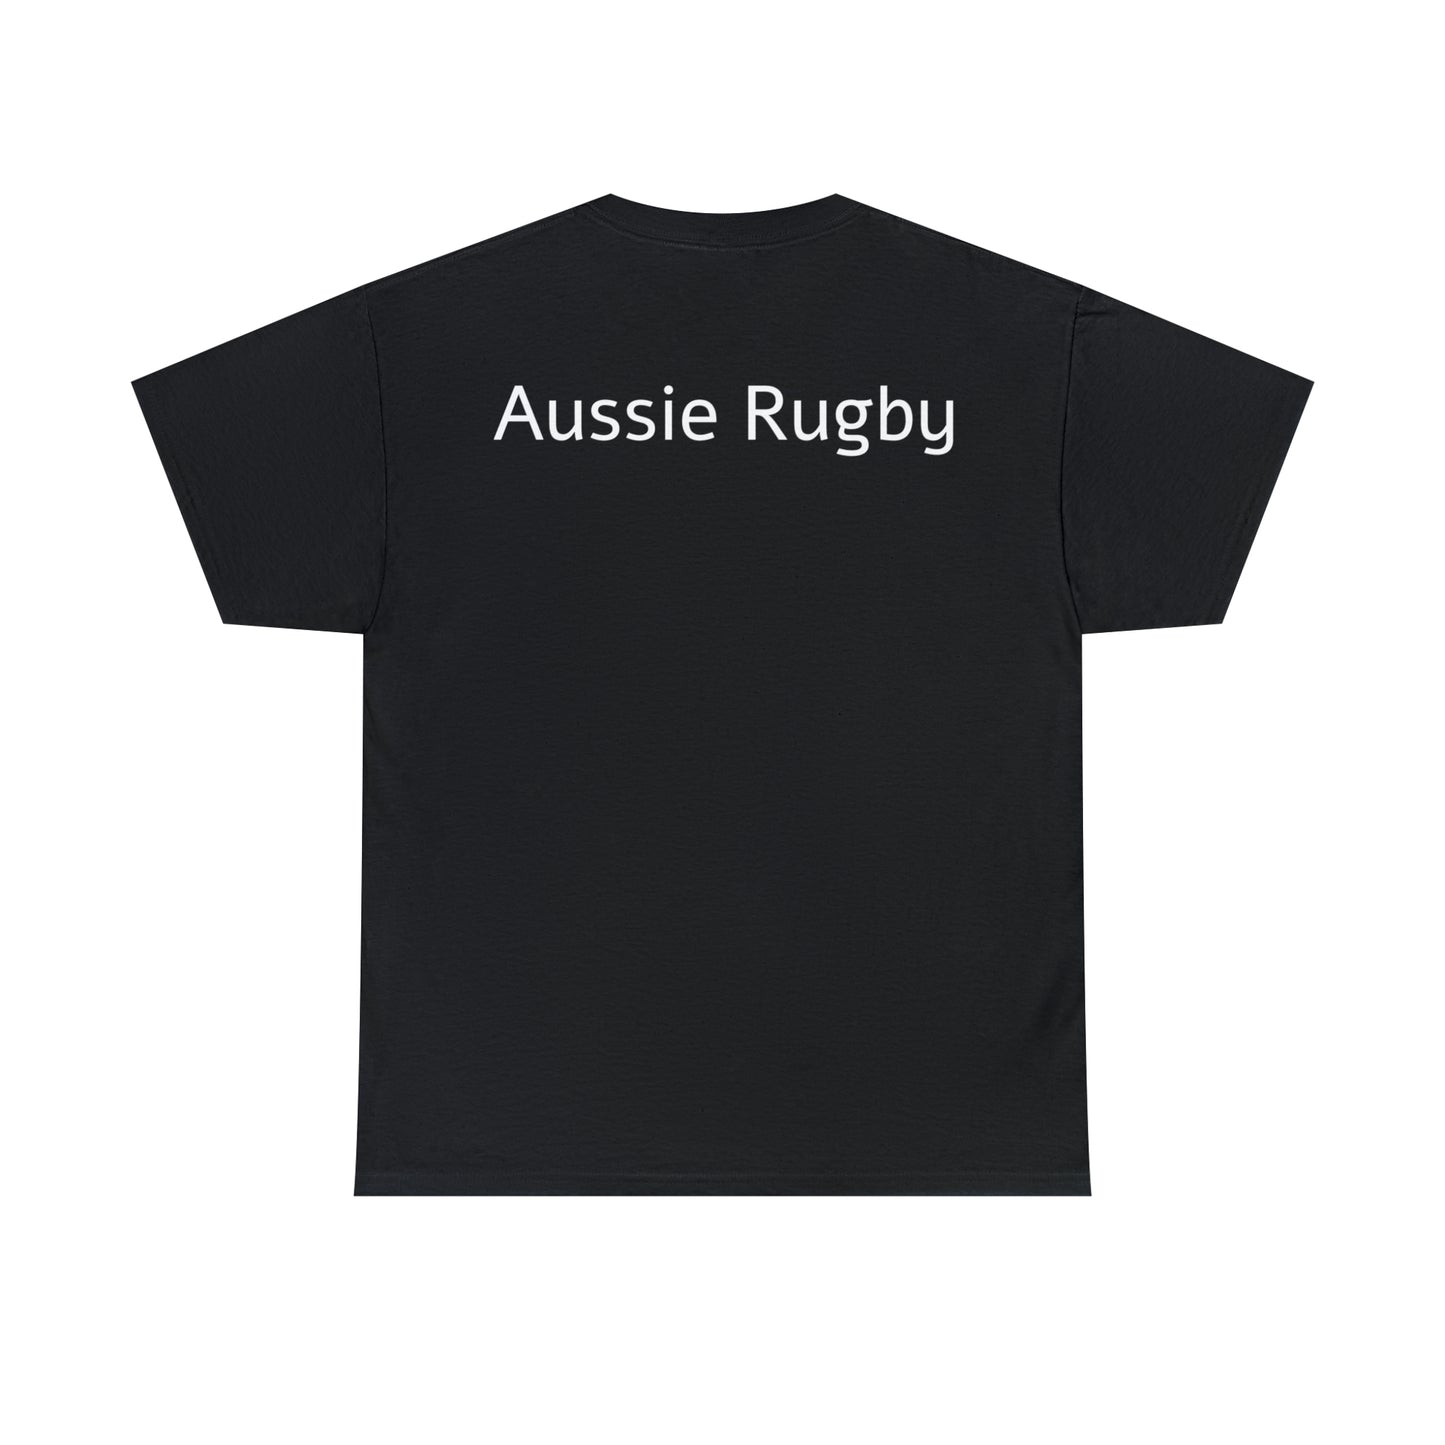 Aussie Aussie Aussie - black shirts